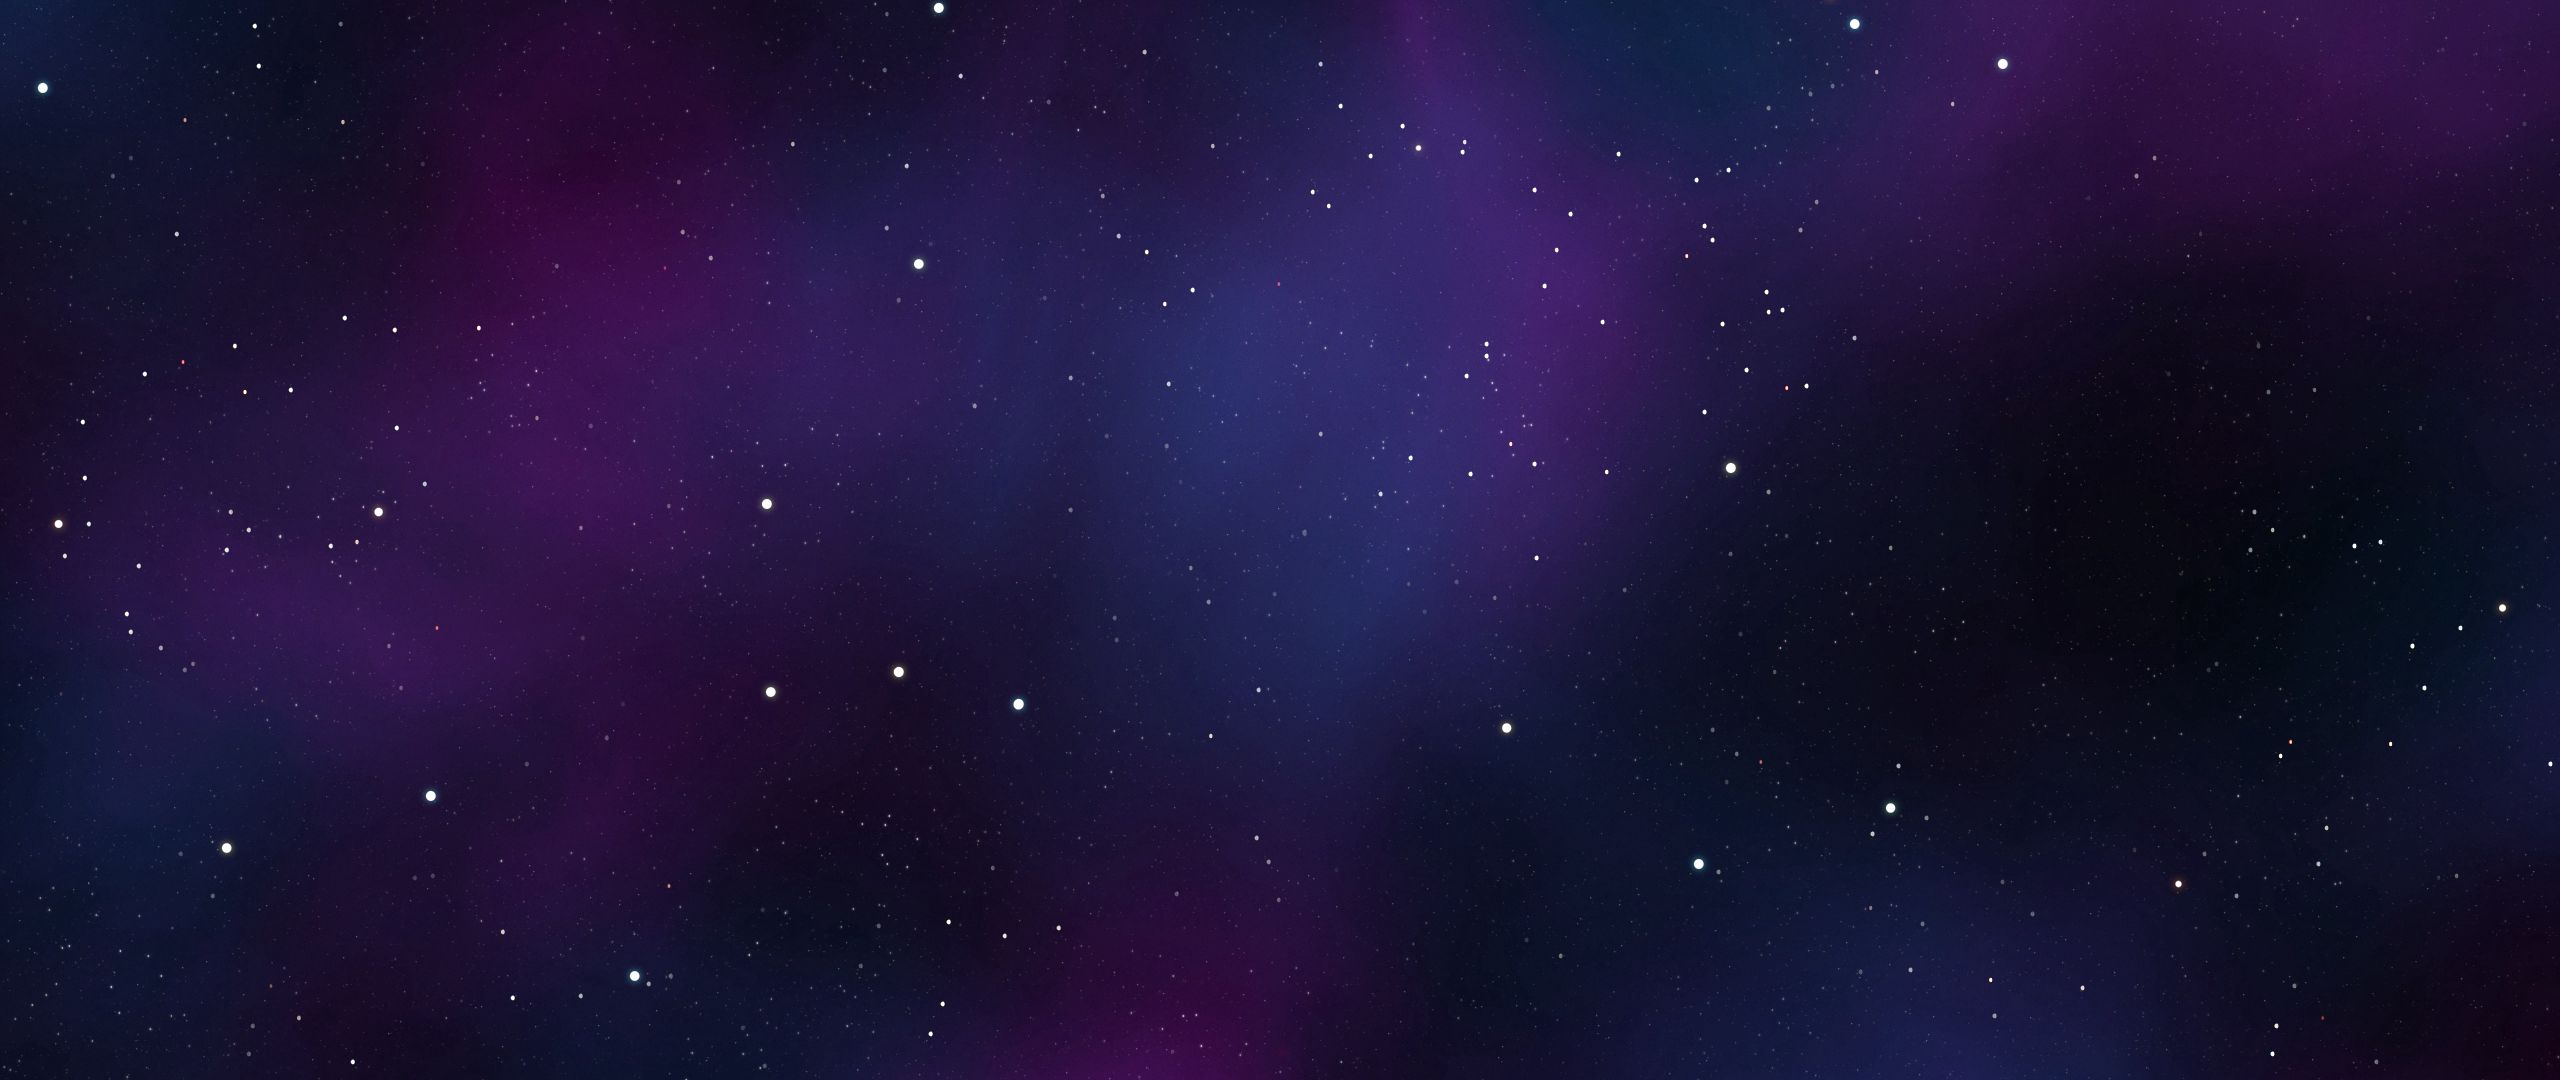 1024x576 для ютуба. Фон для шапки. Сине фиолетовый фон. Фиолетовый космос. Космос звезды.